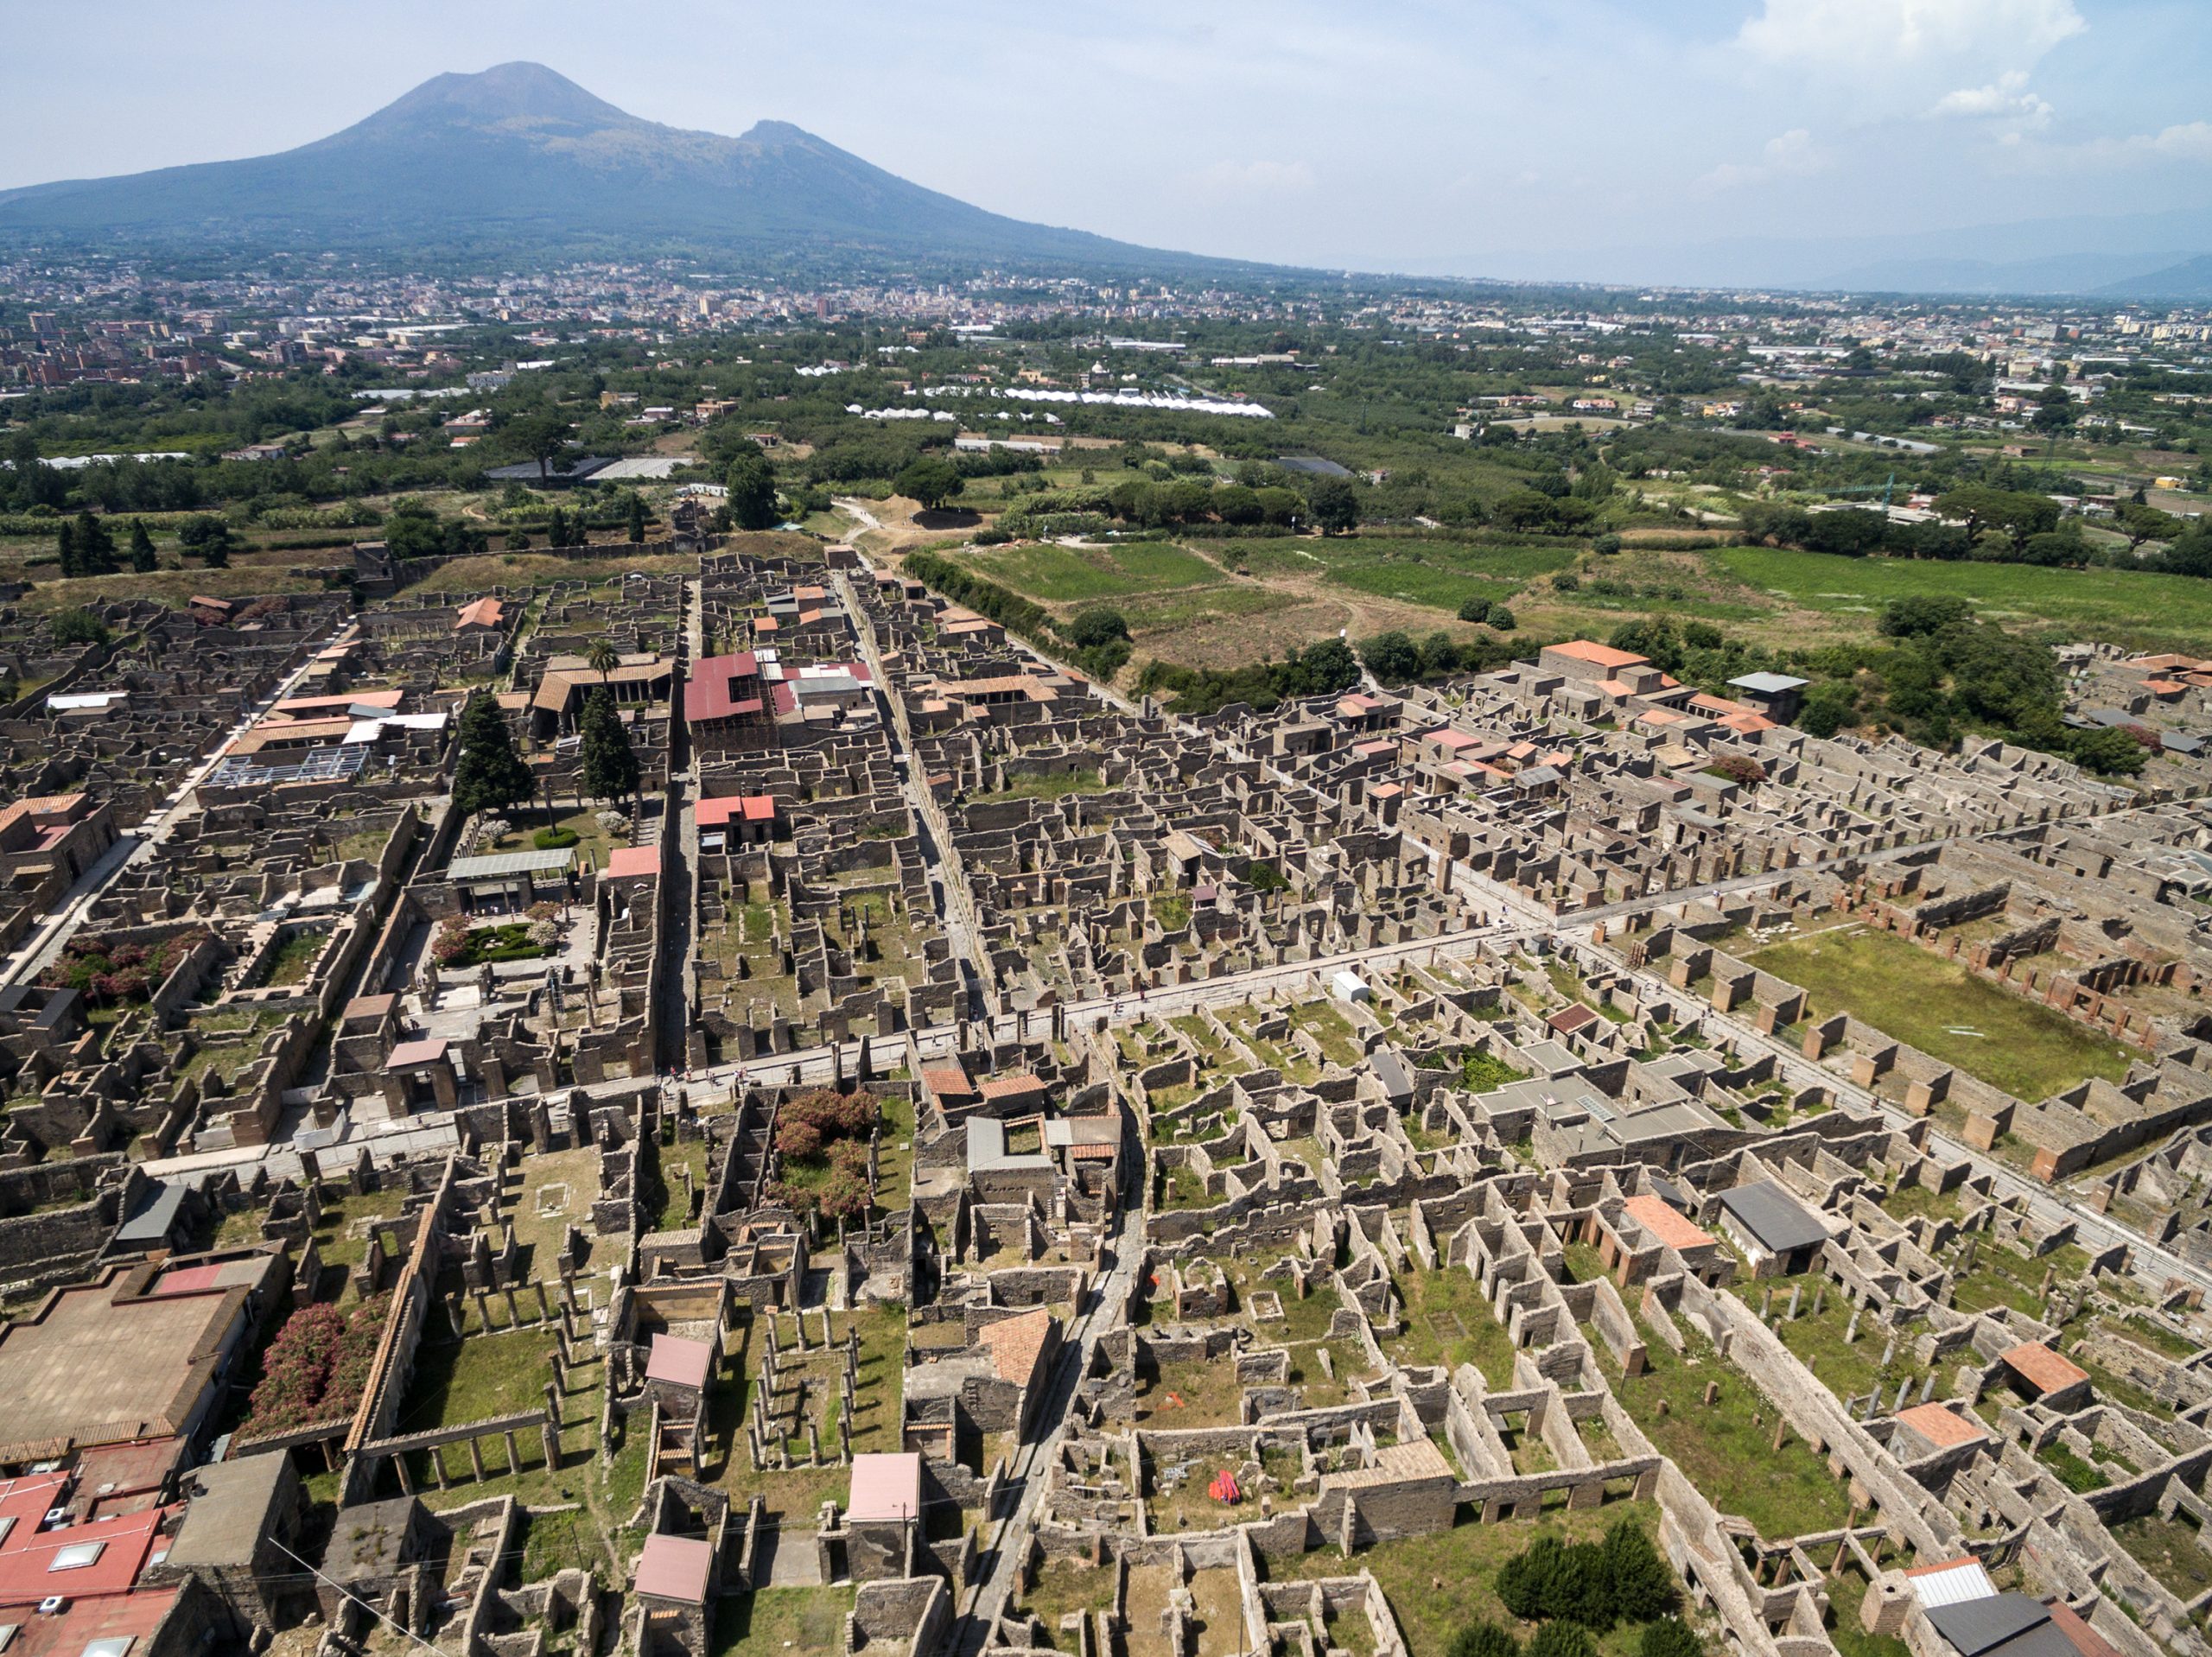 Veduta di Pompei dall'alto